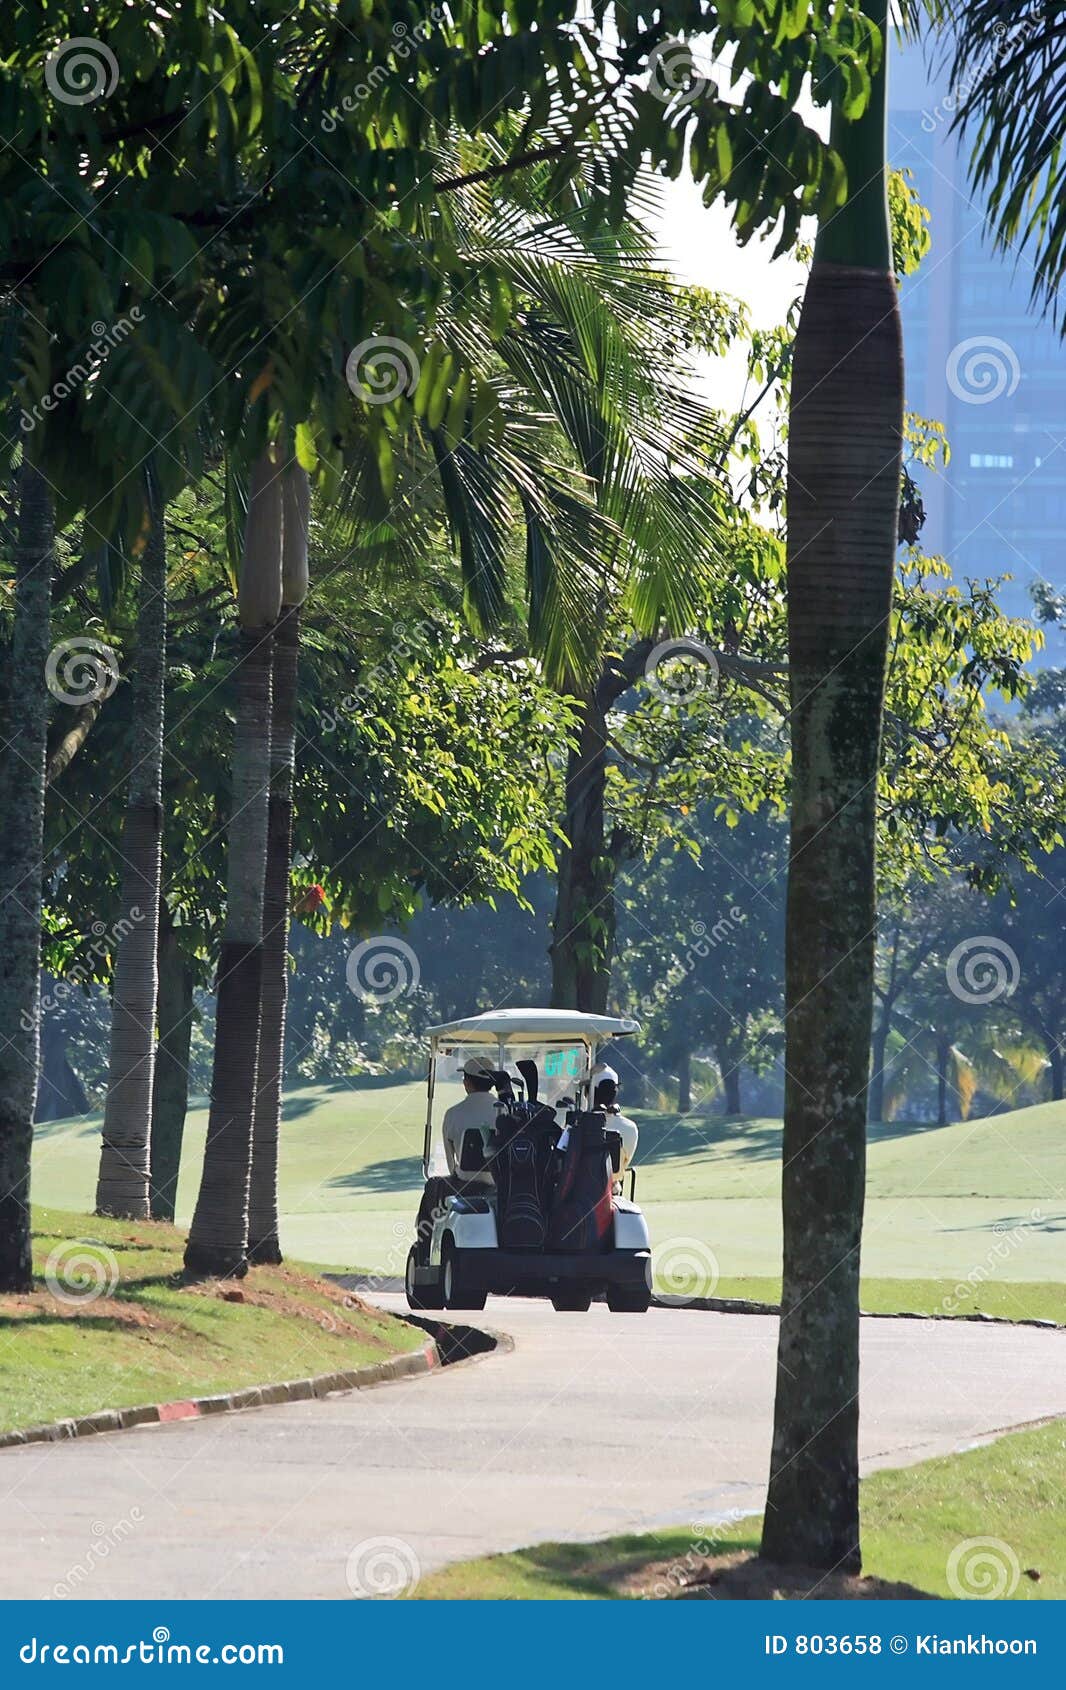 golfcart